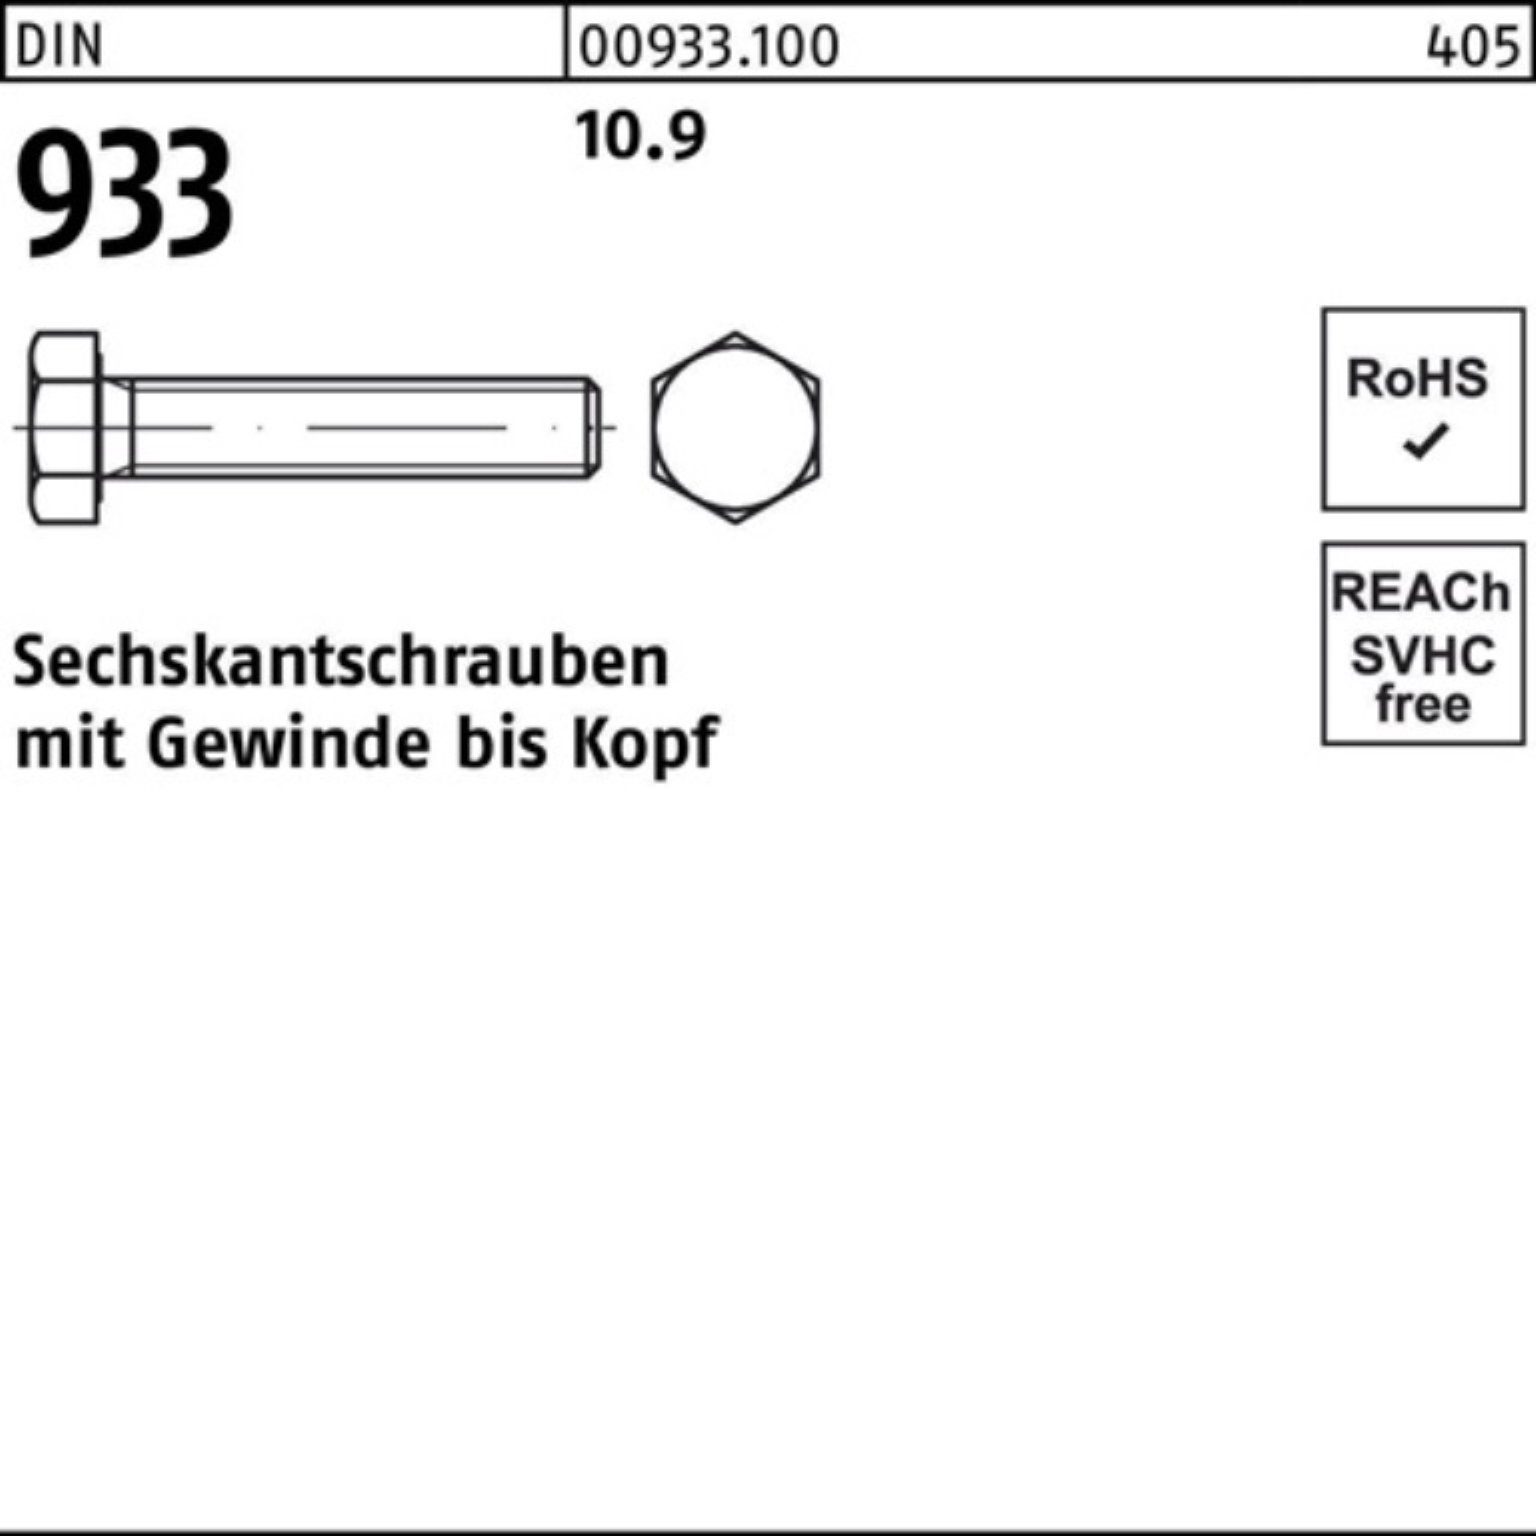 10.9 100er 25 DIN Stück Sechskantschraube Reyher VG DIN Pack 60 M18x Sechskantschraube 933 933